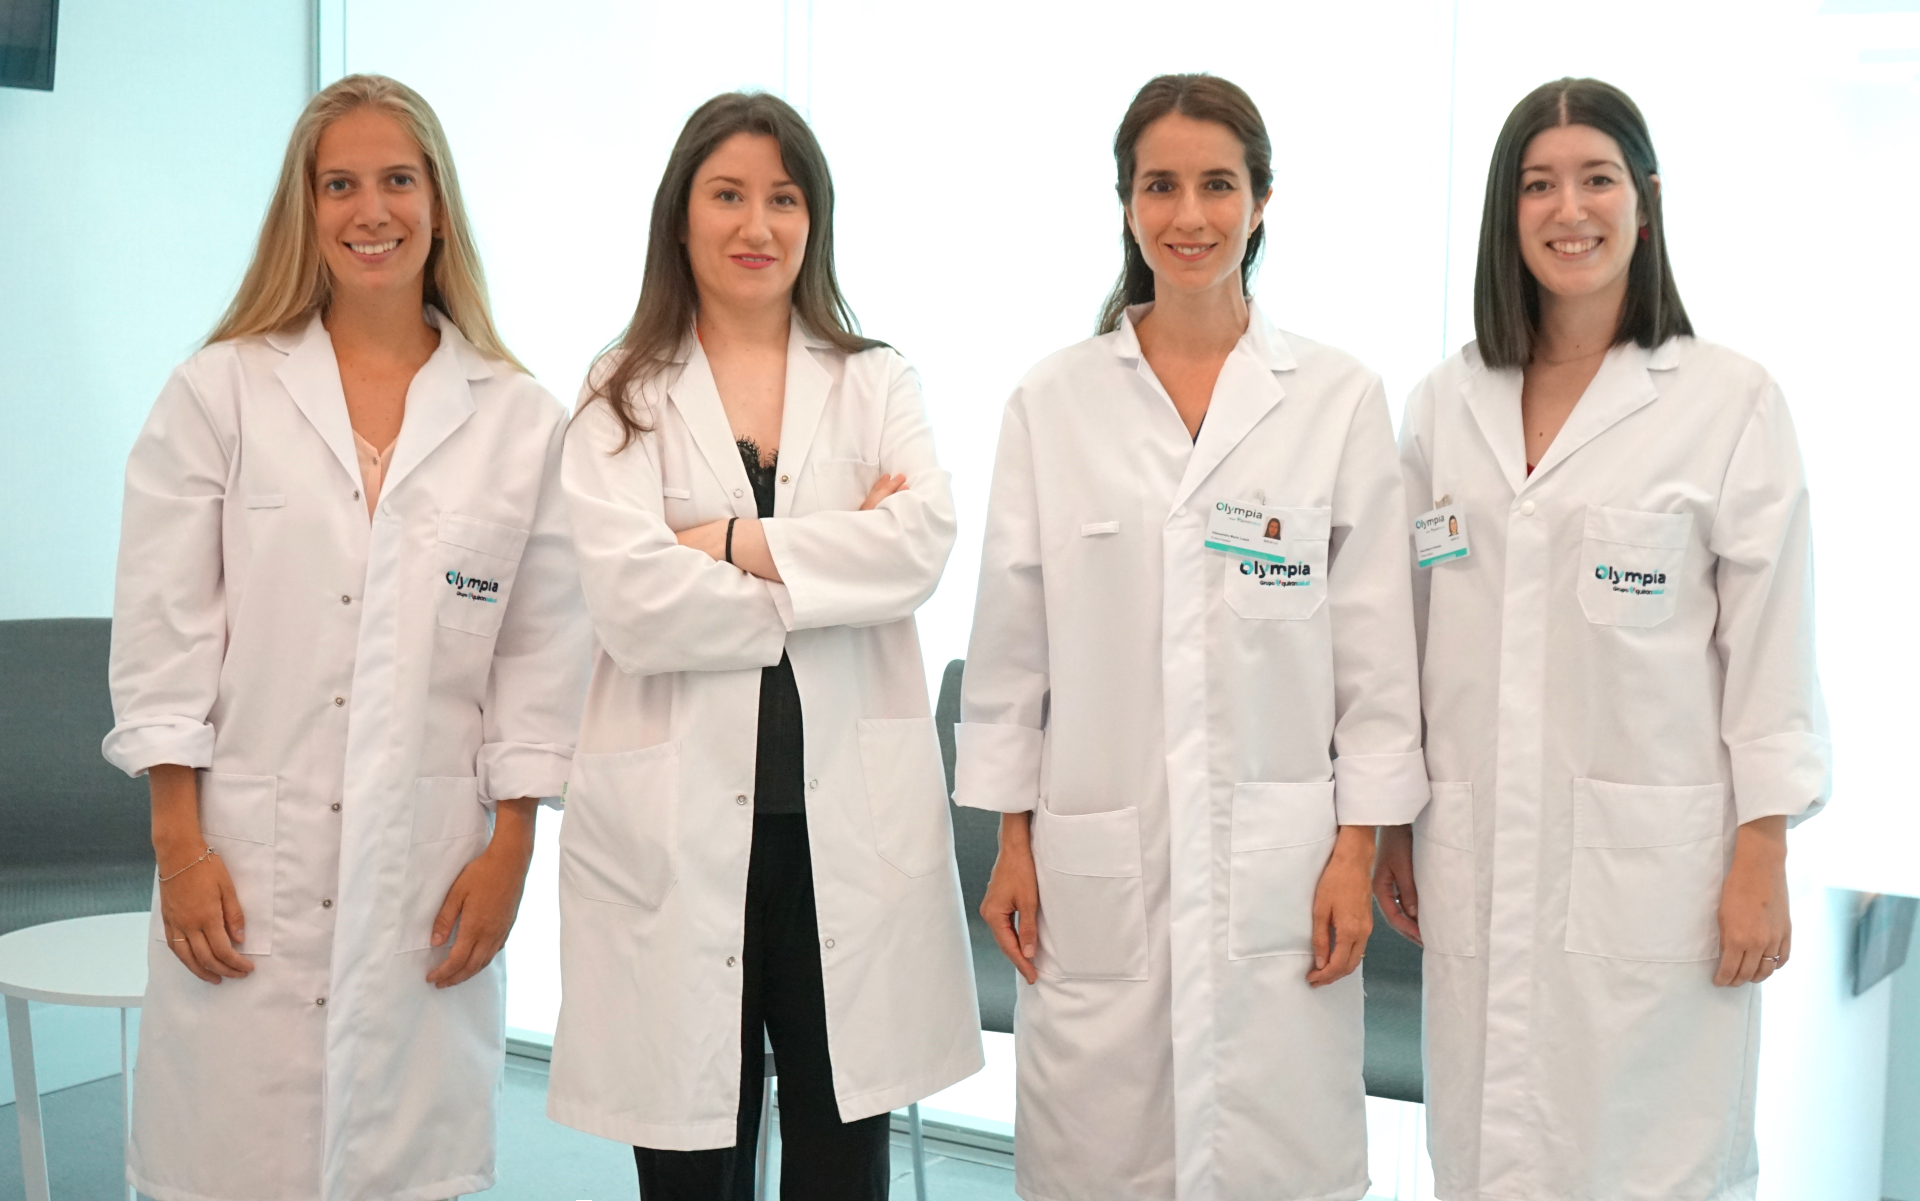 Endocrinologia Macarena Contreras Angulo, Maria Luisa de Mingo, Alessandra Luque Pazos e Irune Blanco